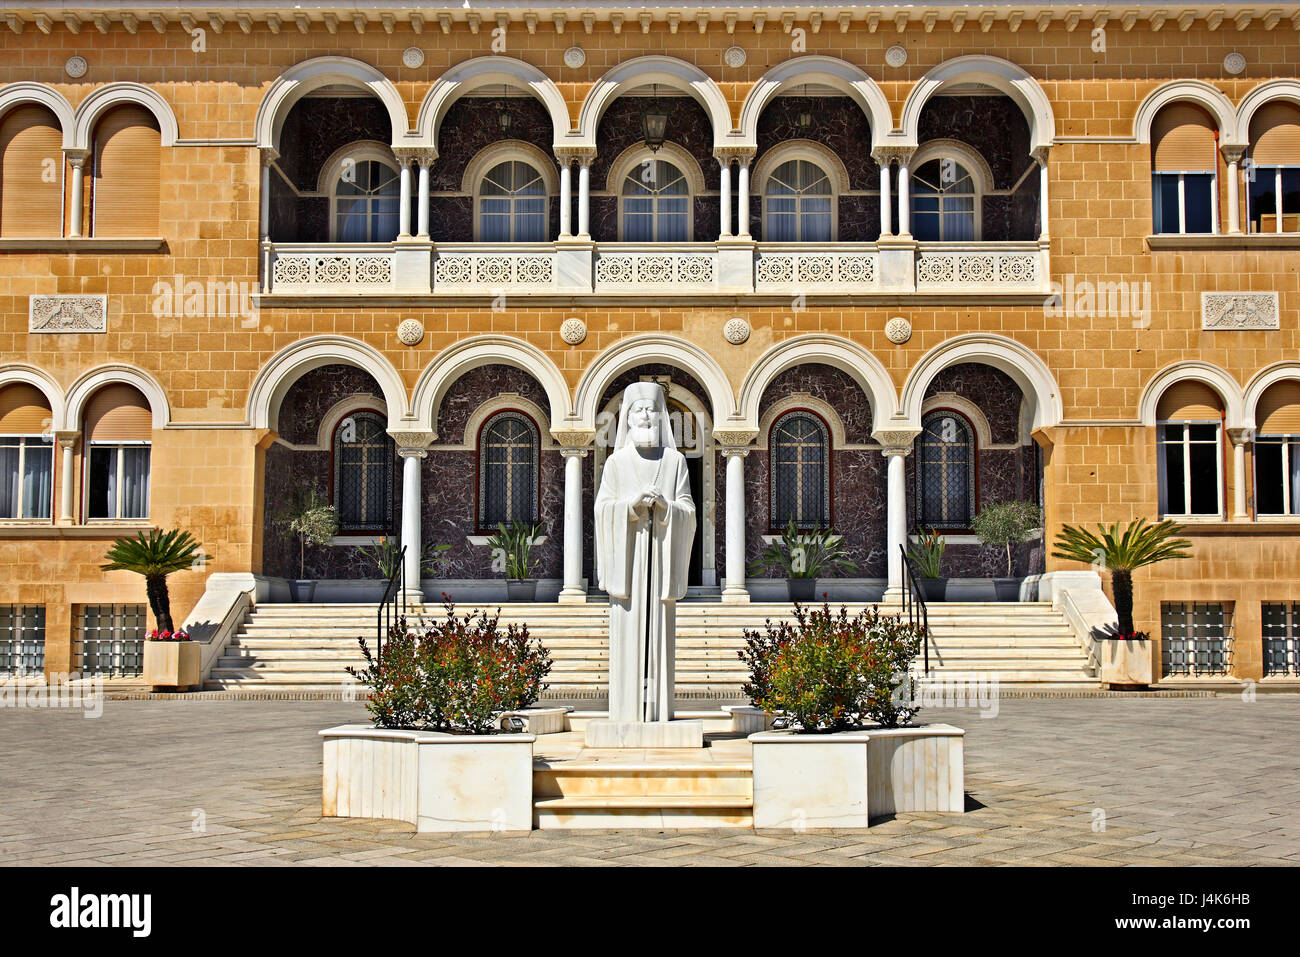 Le palais de l'archevêque d'une statue de l'archevêque Makarios III dans la vieille ville de Nicosie (Lefkosia), Chypre. Banque D'Images